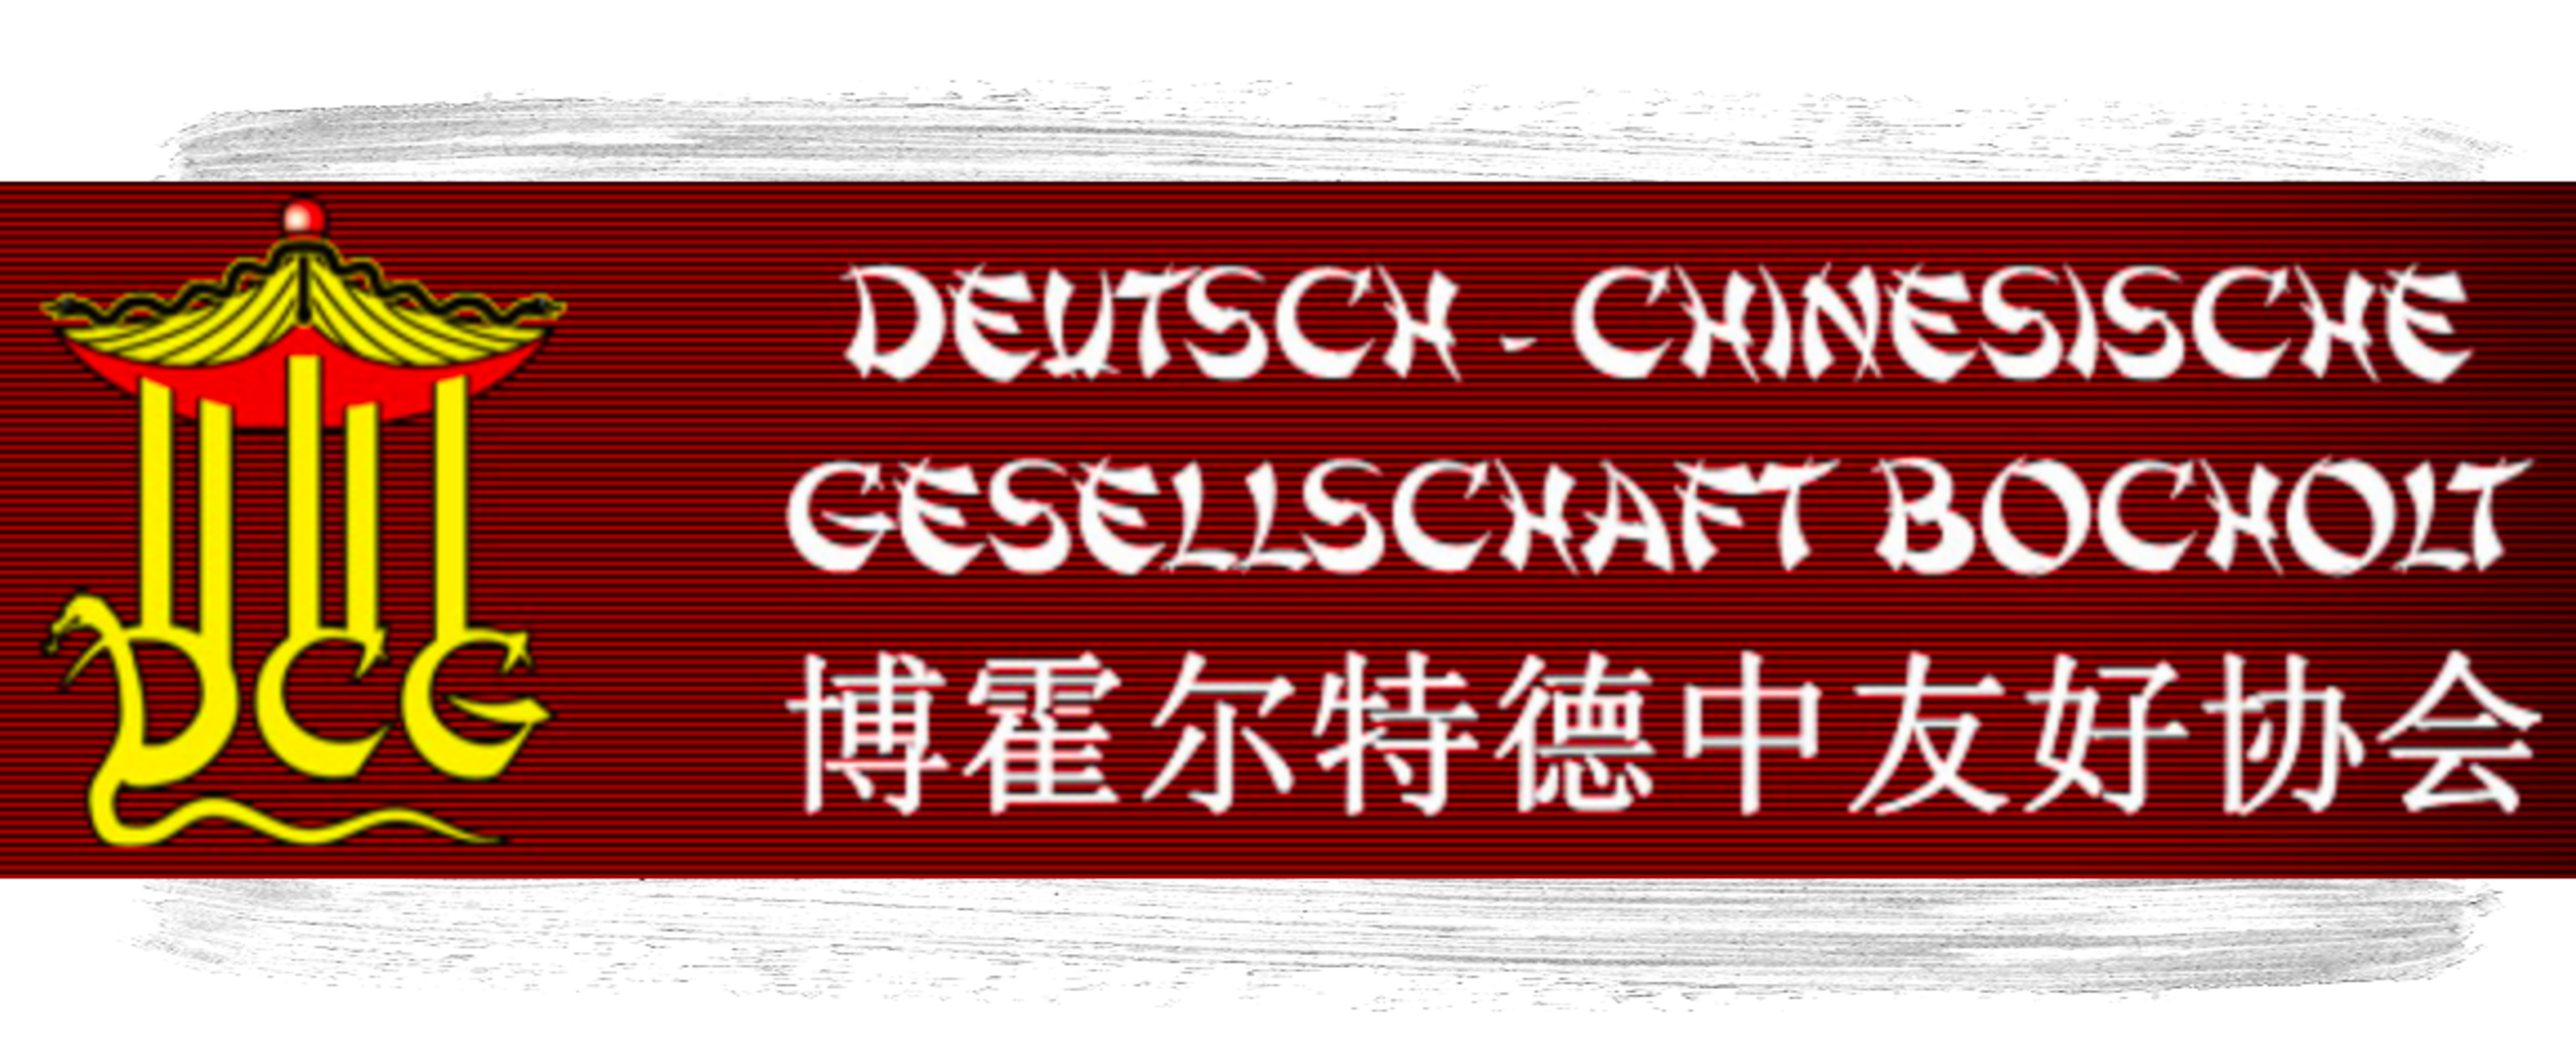 Die Deutsch-Chinesische Gesellschaft e.V.